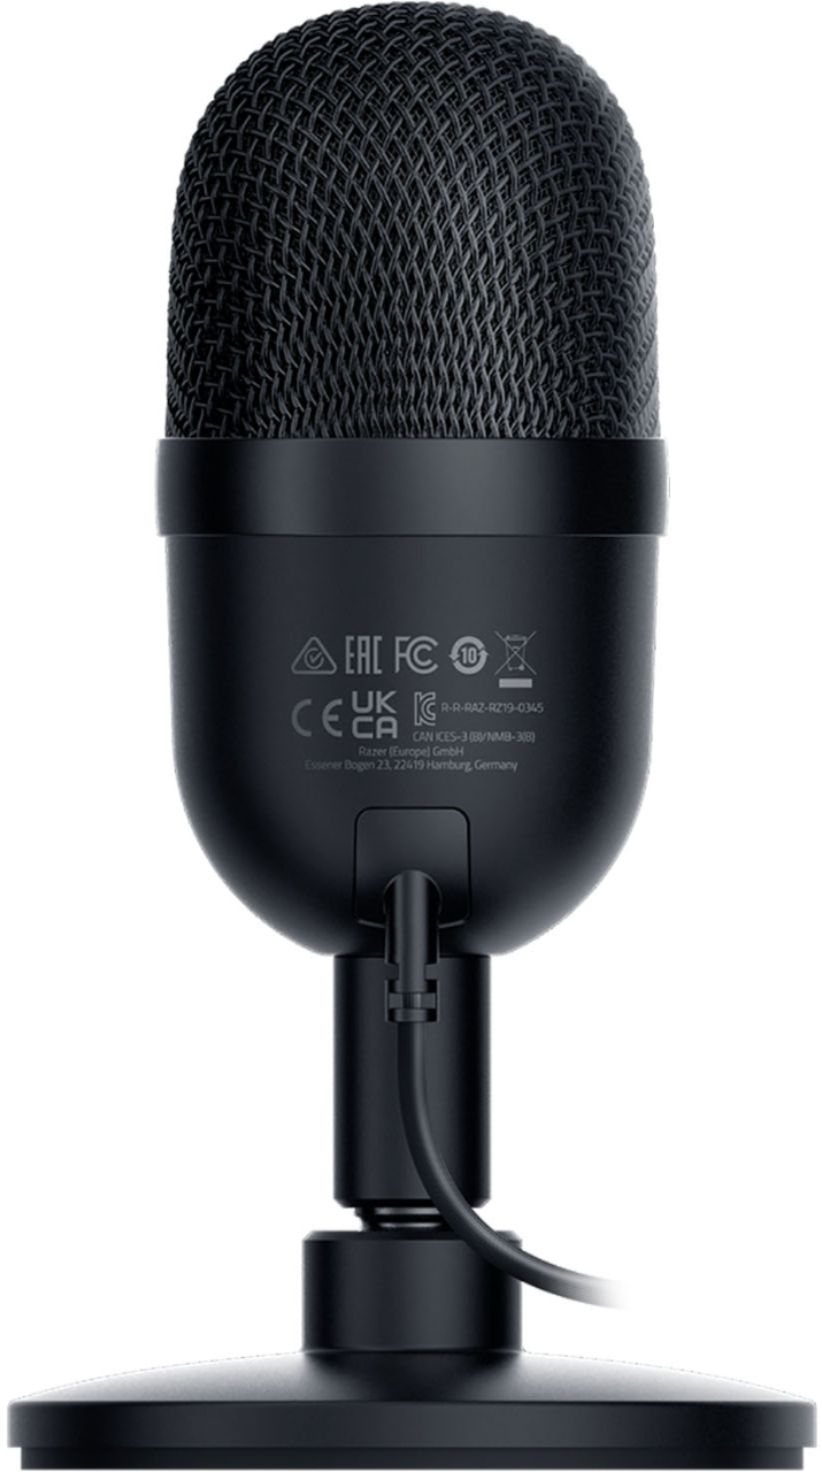 Razer Seiren Mini Wired Ultra-compact Condenser Microphone  RZ19-03450100-R3U1 - Best Buy